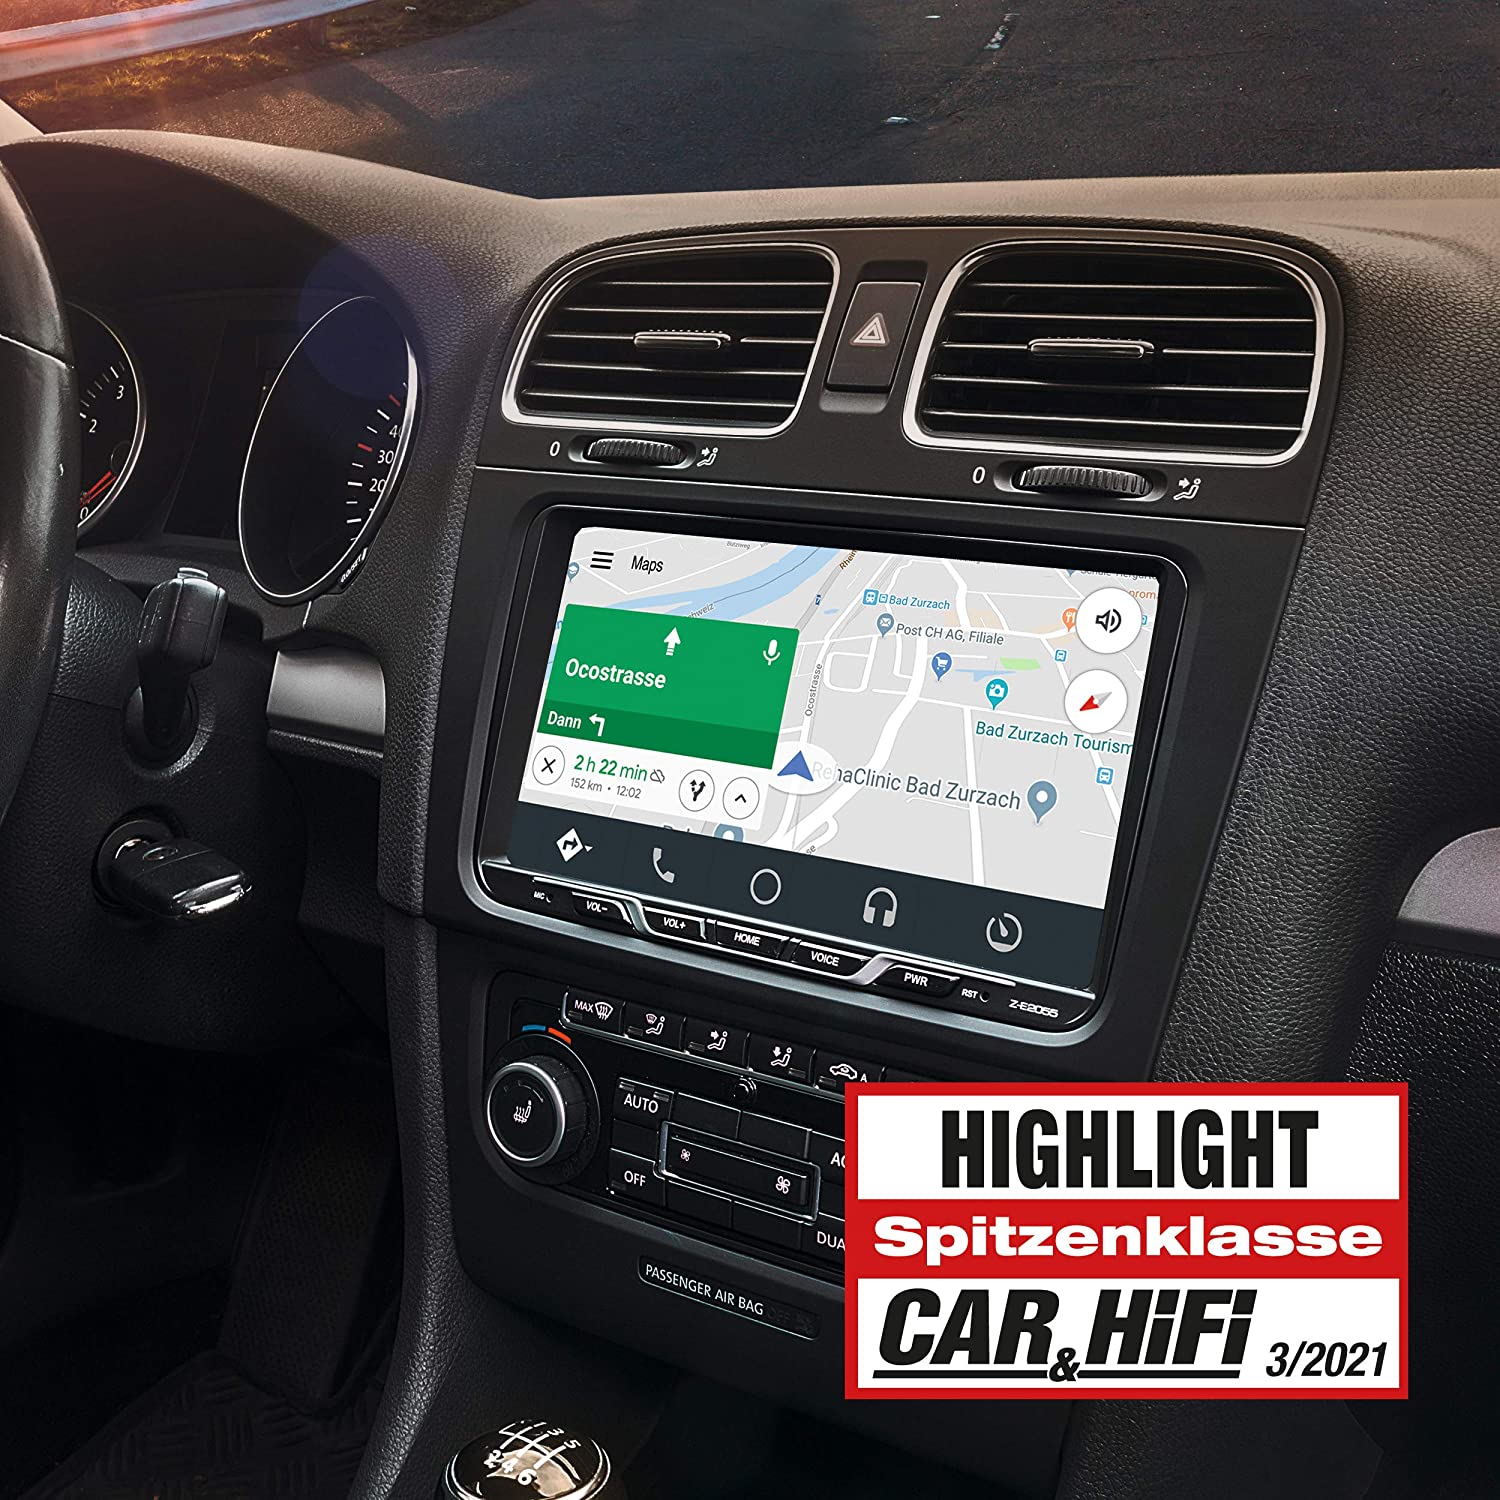 ZENEC Z-E2055 E>GO Infotainer Autoradio mit 9" Panel TFT für Volkswagen, VW, SEAT UND SKODA mit Apple CarPlay und Google Android, DAB+ Tuner, Bluetooth 